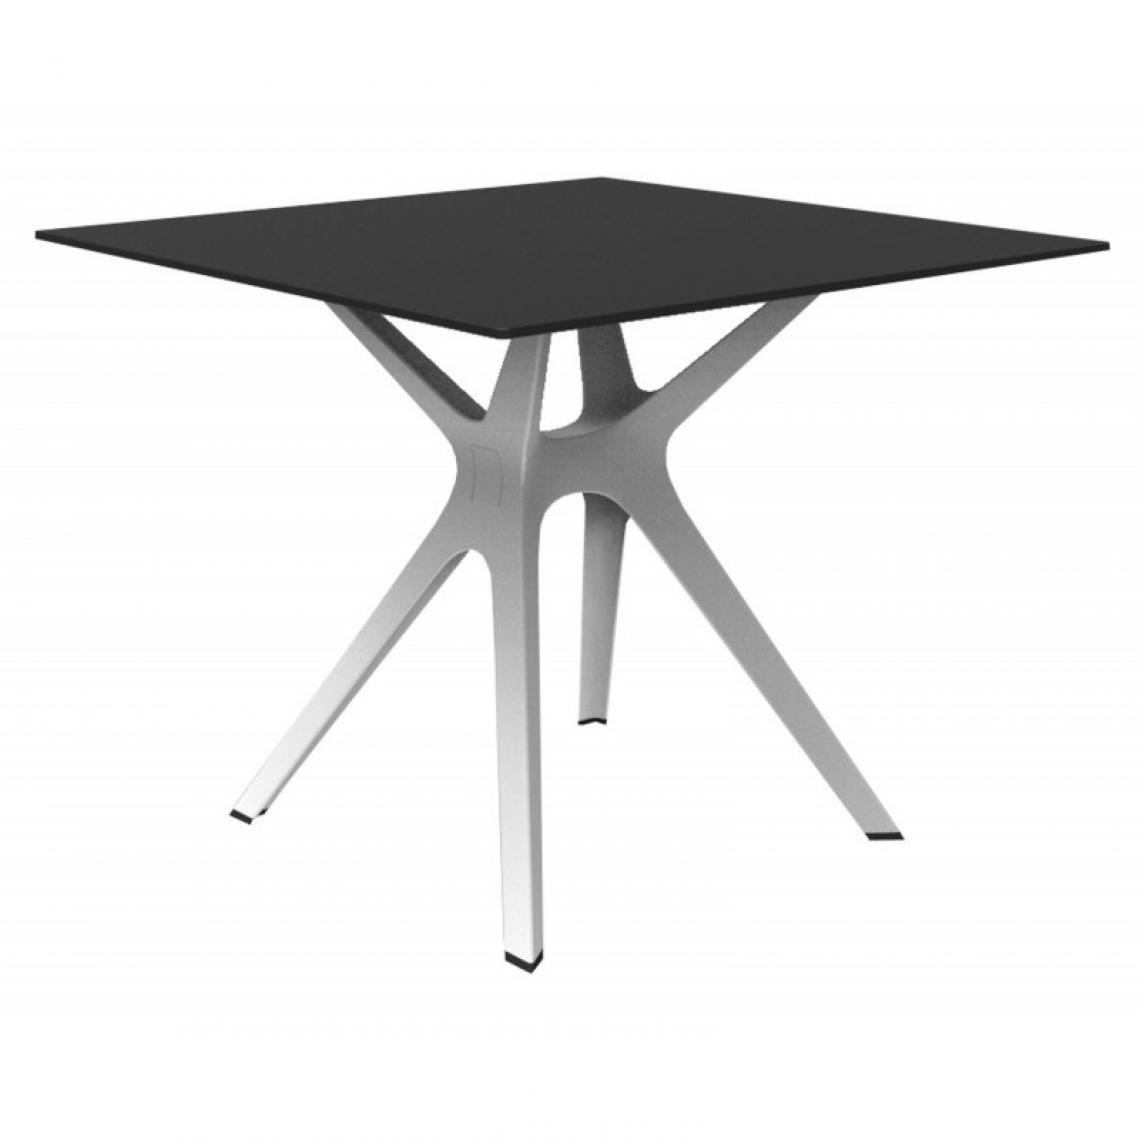 Resol - Table Phenolique 90x90 Pied De Table Vela "s" - Resol - Pied Blanc - Tableau NoirAluminium, phénolique compact, fibre de verre, po - Tables à manger